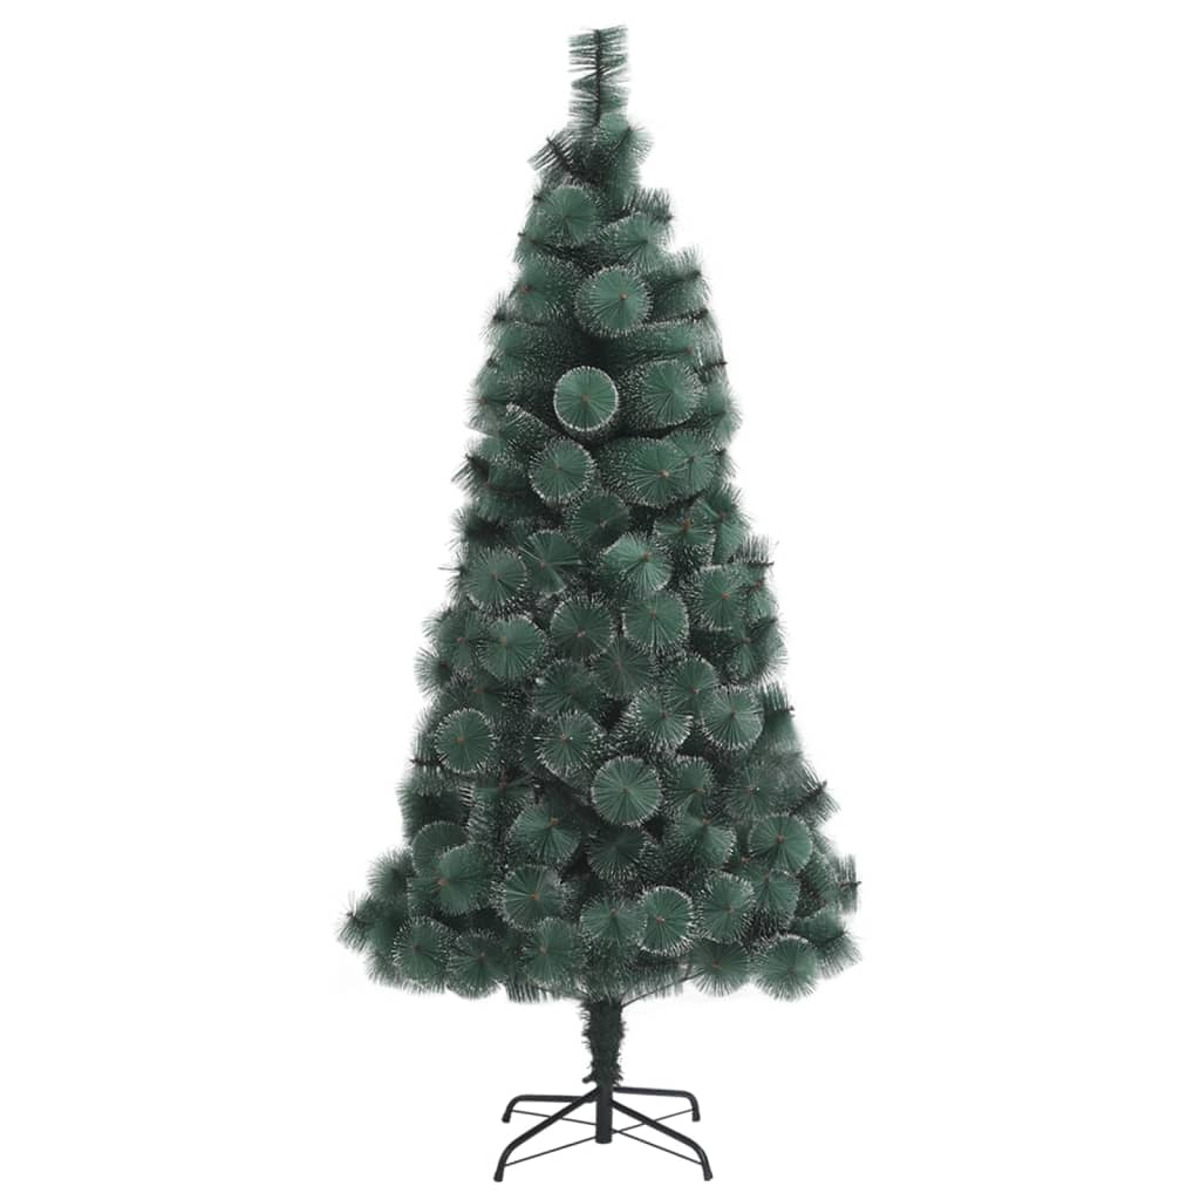 VIDAXL 328486 Weihnachtsbaum